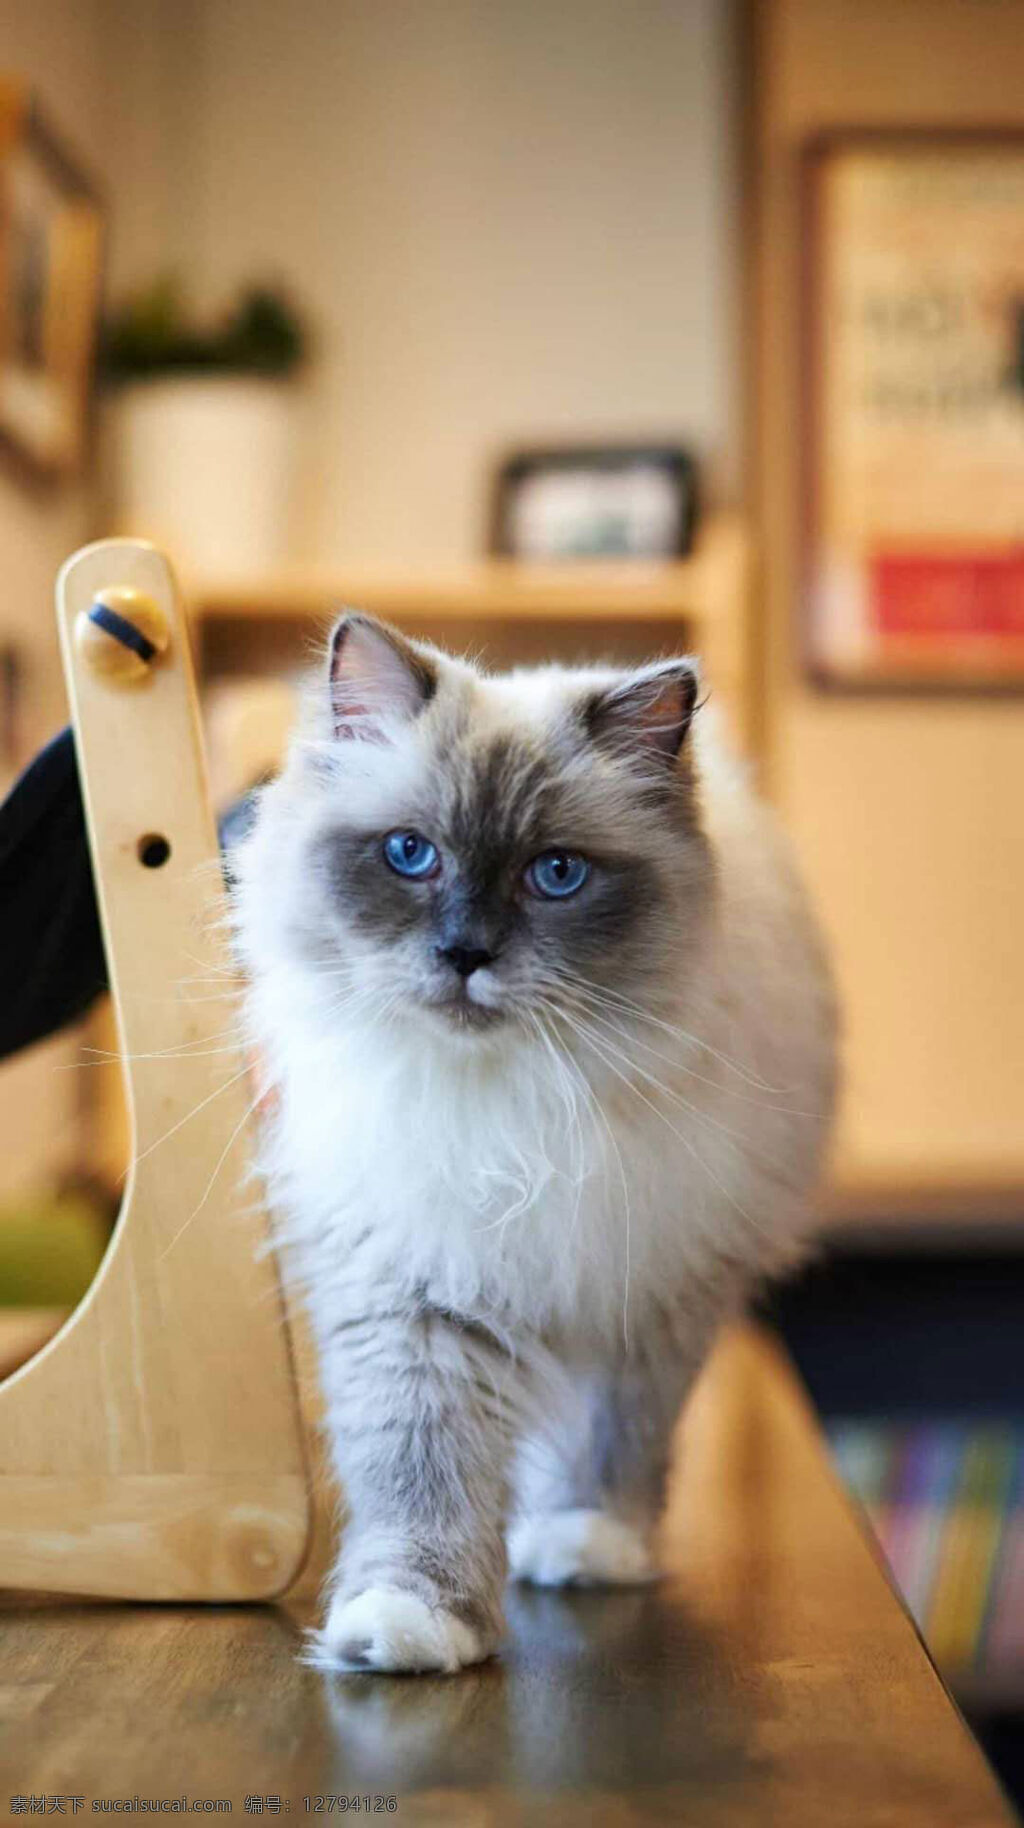 漂亮的猫咪 蓝眼睛 白胡须 美丽的猫咪 机警的猫咪 宠物猫 生物世界 家禽家畜